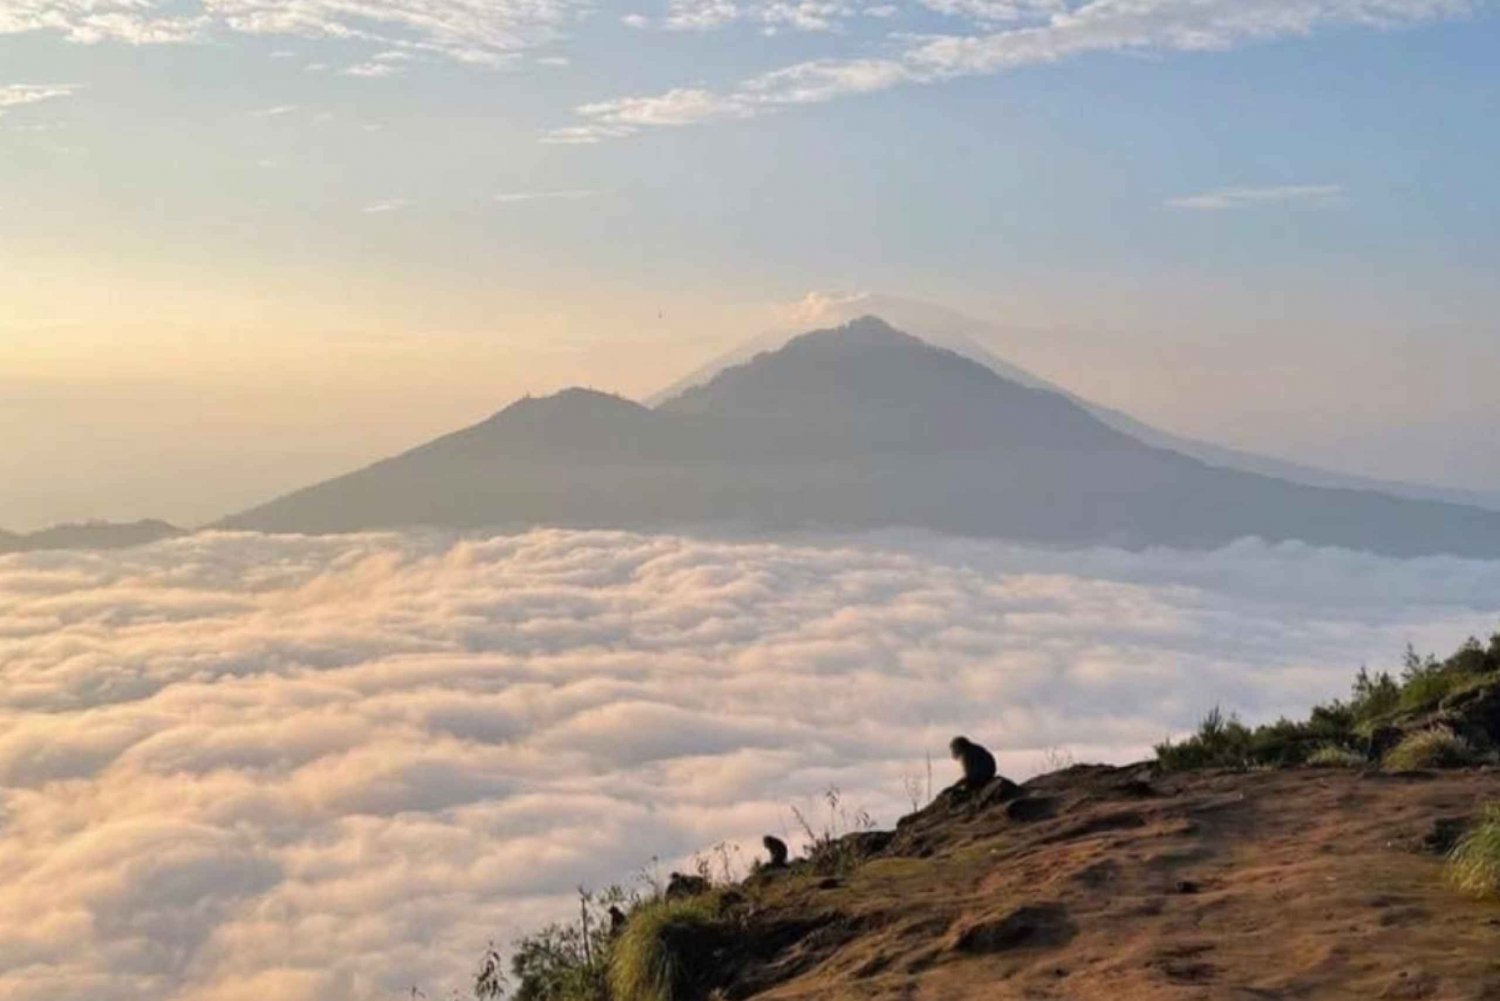 Descontraia-se escalando o Monte Batur